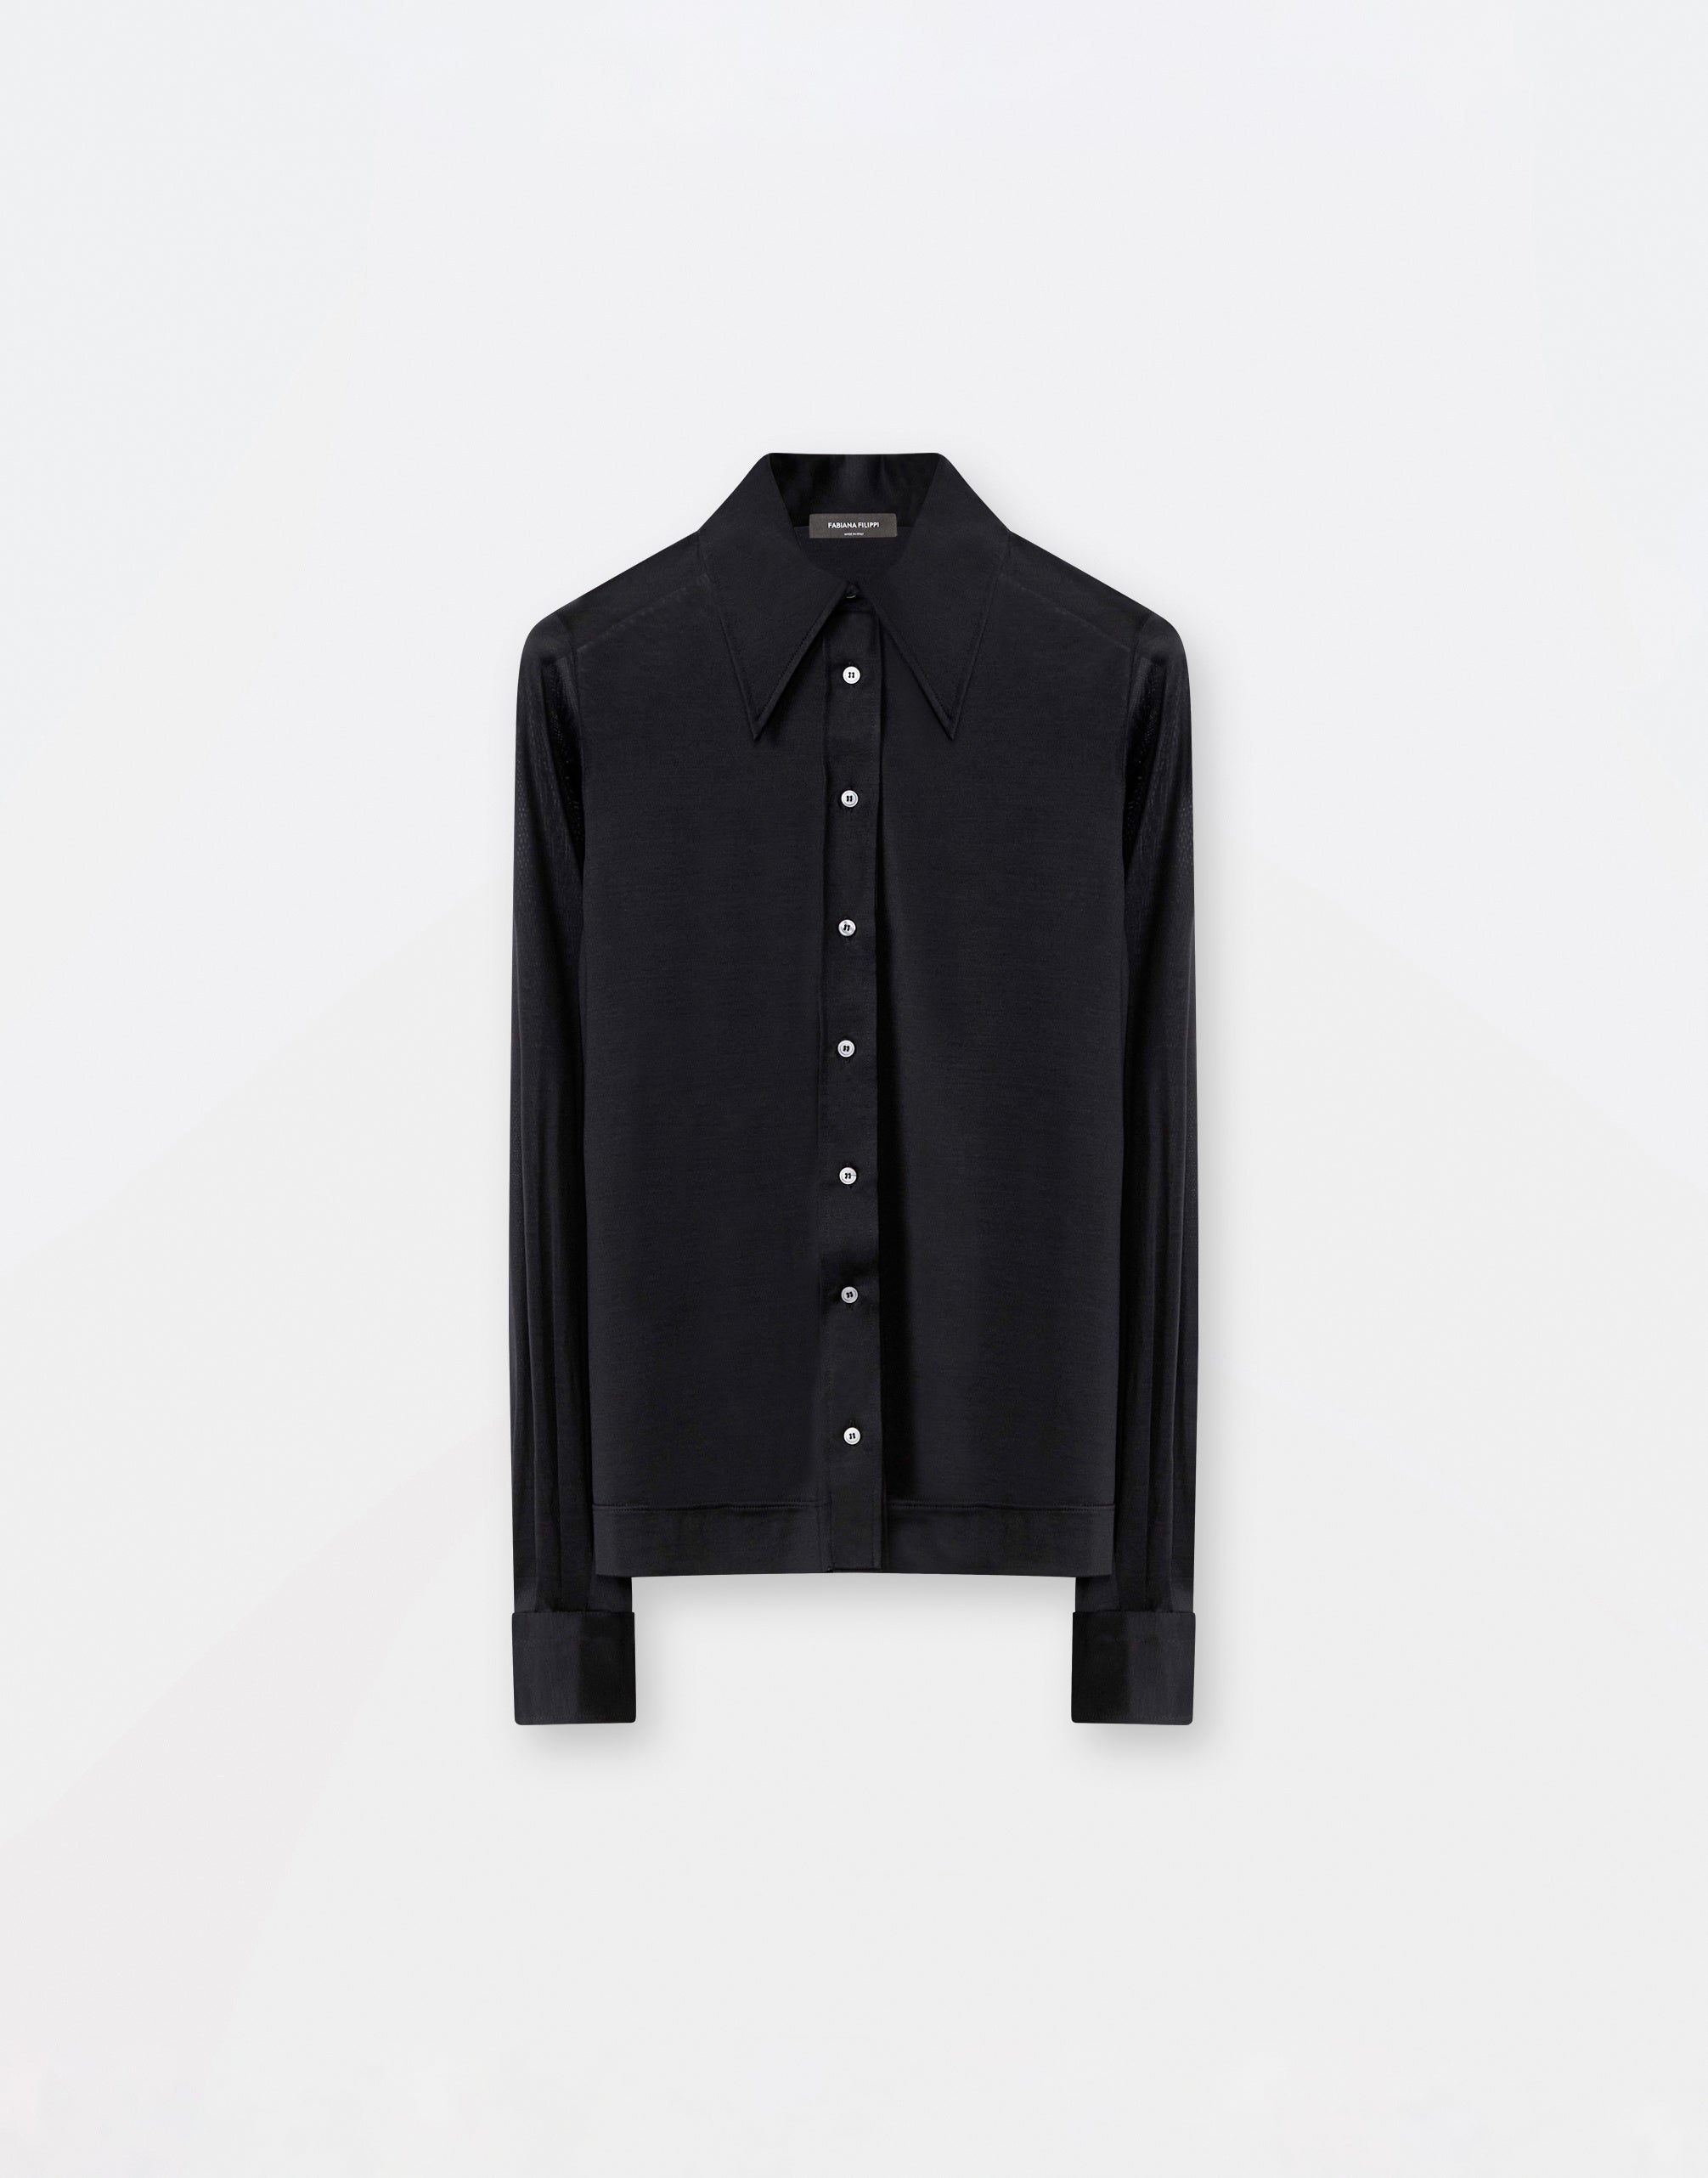 Silk jersey shirt, black